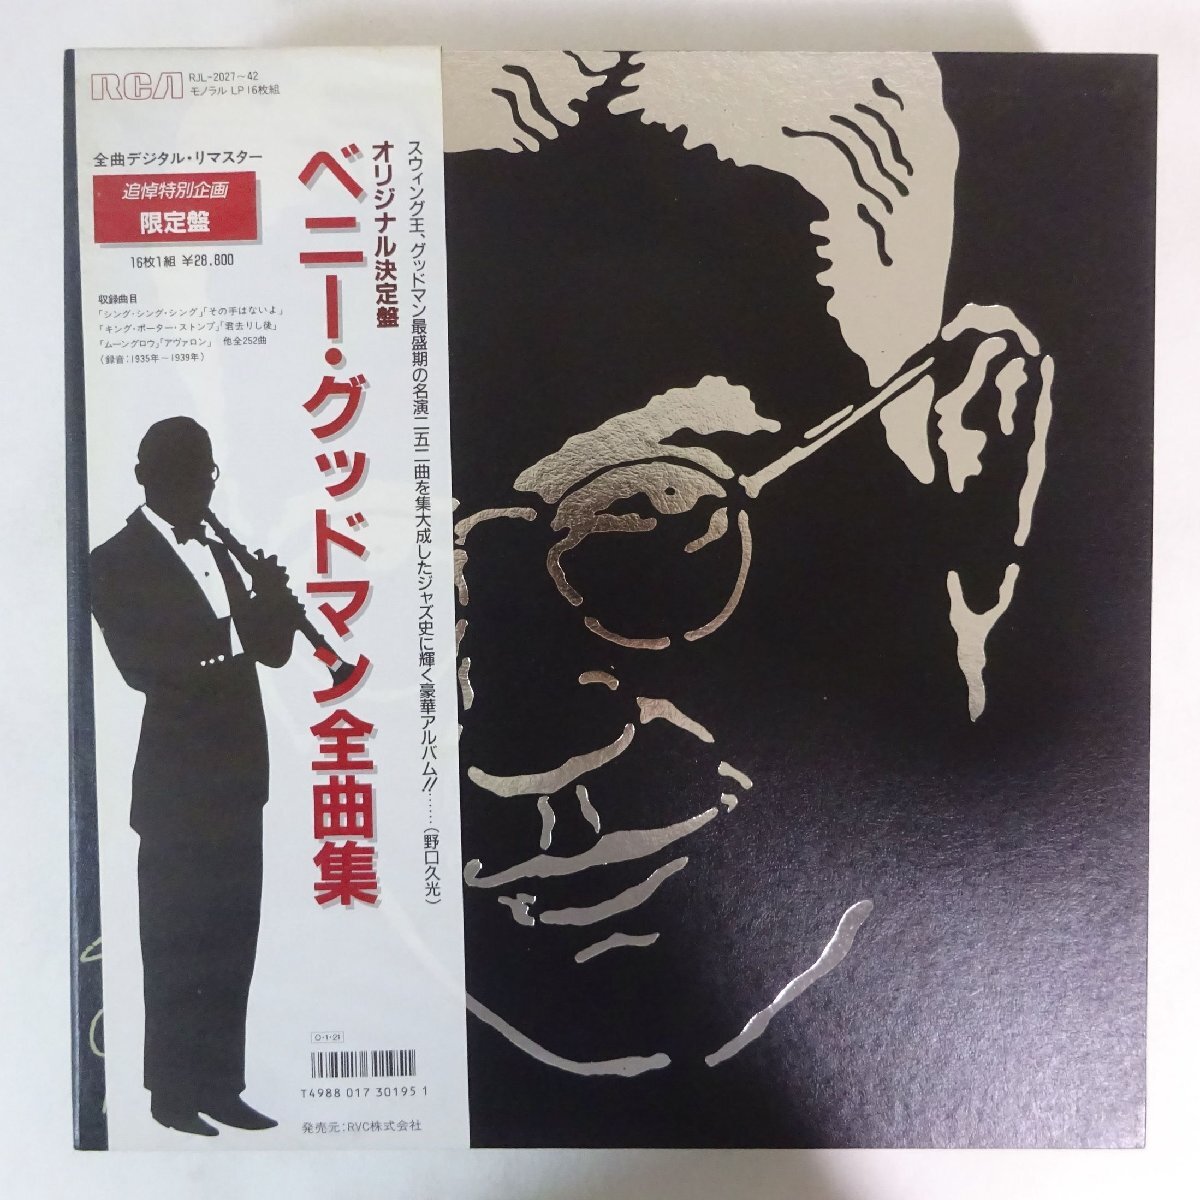 11185040;【帯付き/RCA/限定プレス/MONO/ブックレット付き/BOX/16LP】Benny Goodman / The RCA Victory Years ベニー・グッドマン全曲集の画像1